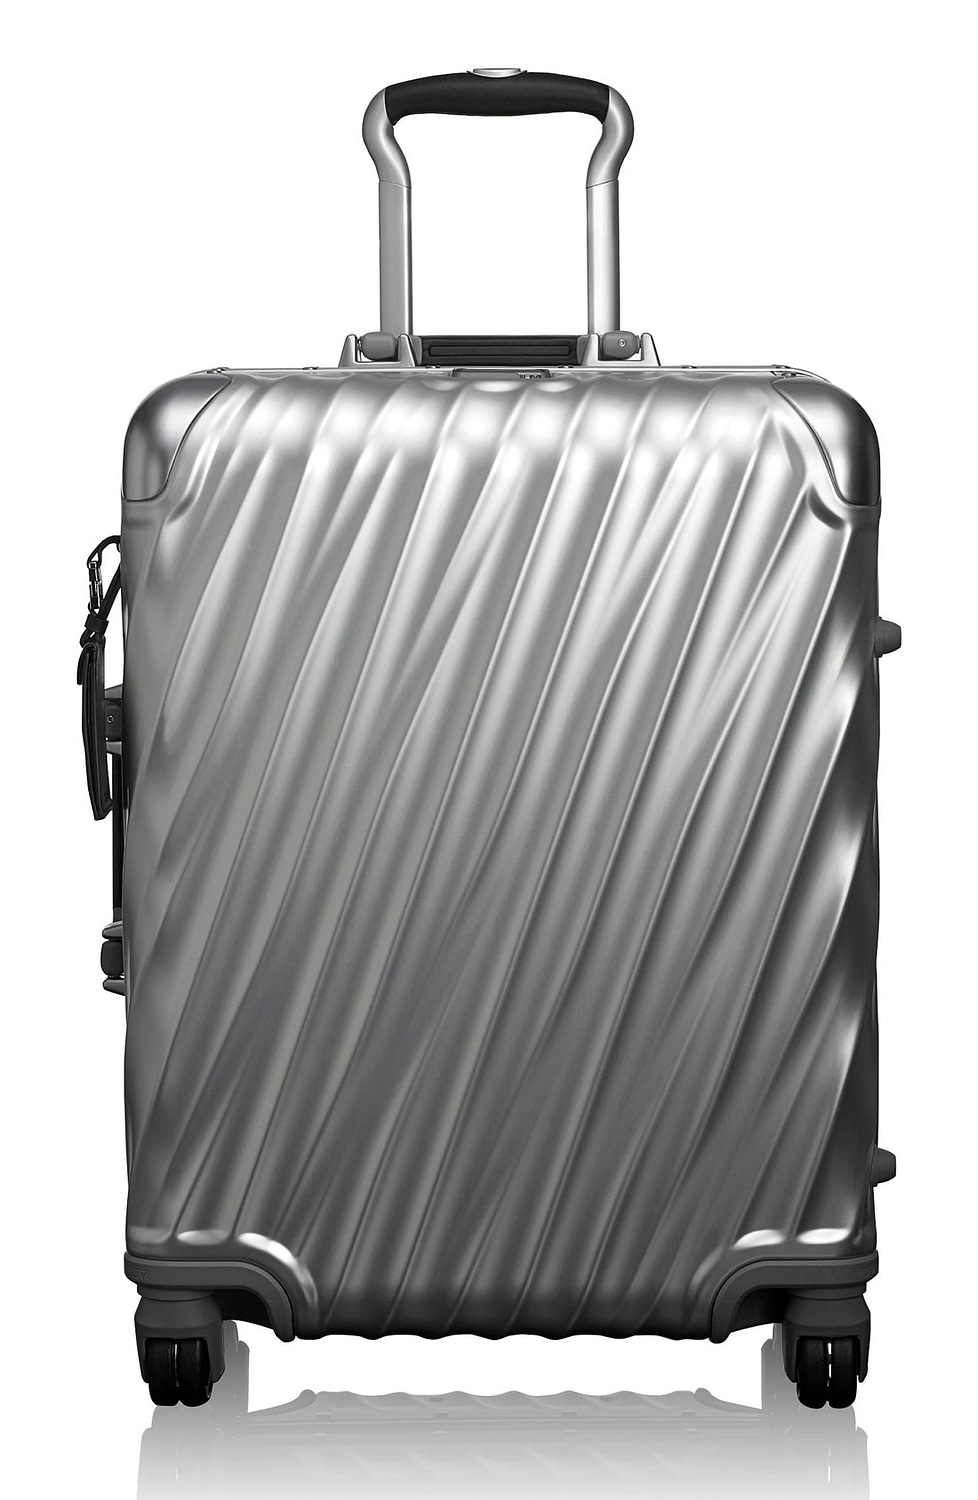 Best aluminum luggage